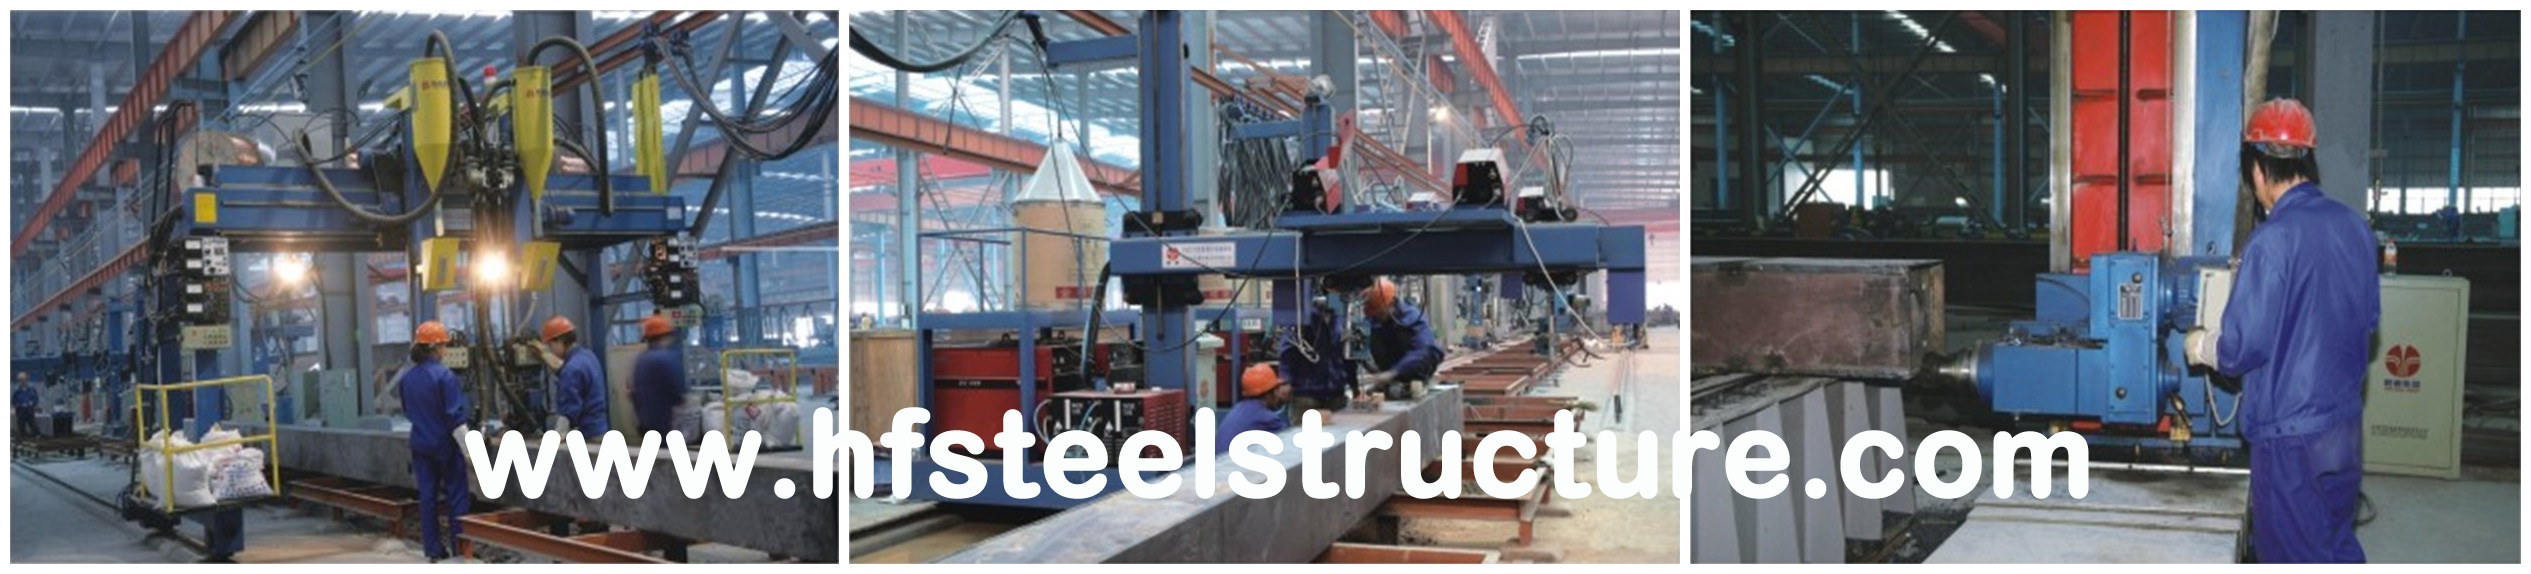 Гальванизированные OEM изготовления структурной стали для еды и других обрабатывая индустрий